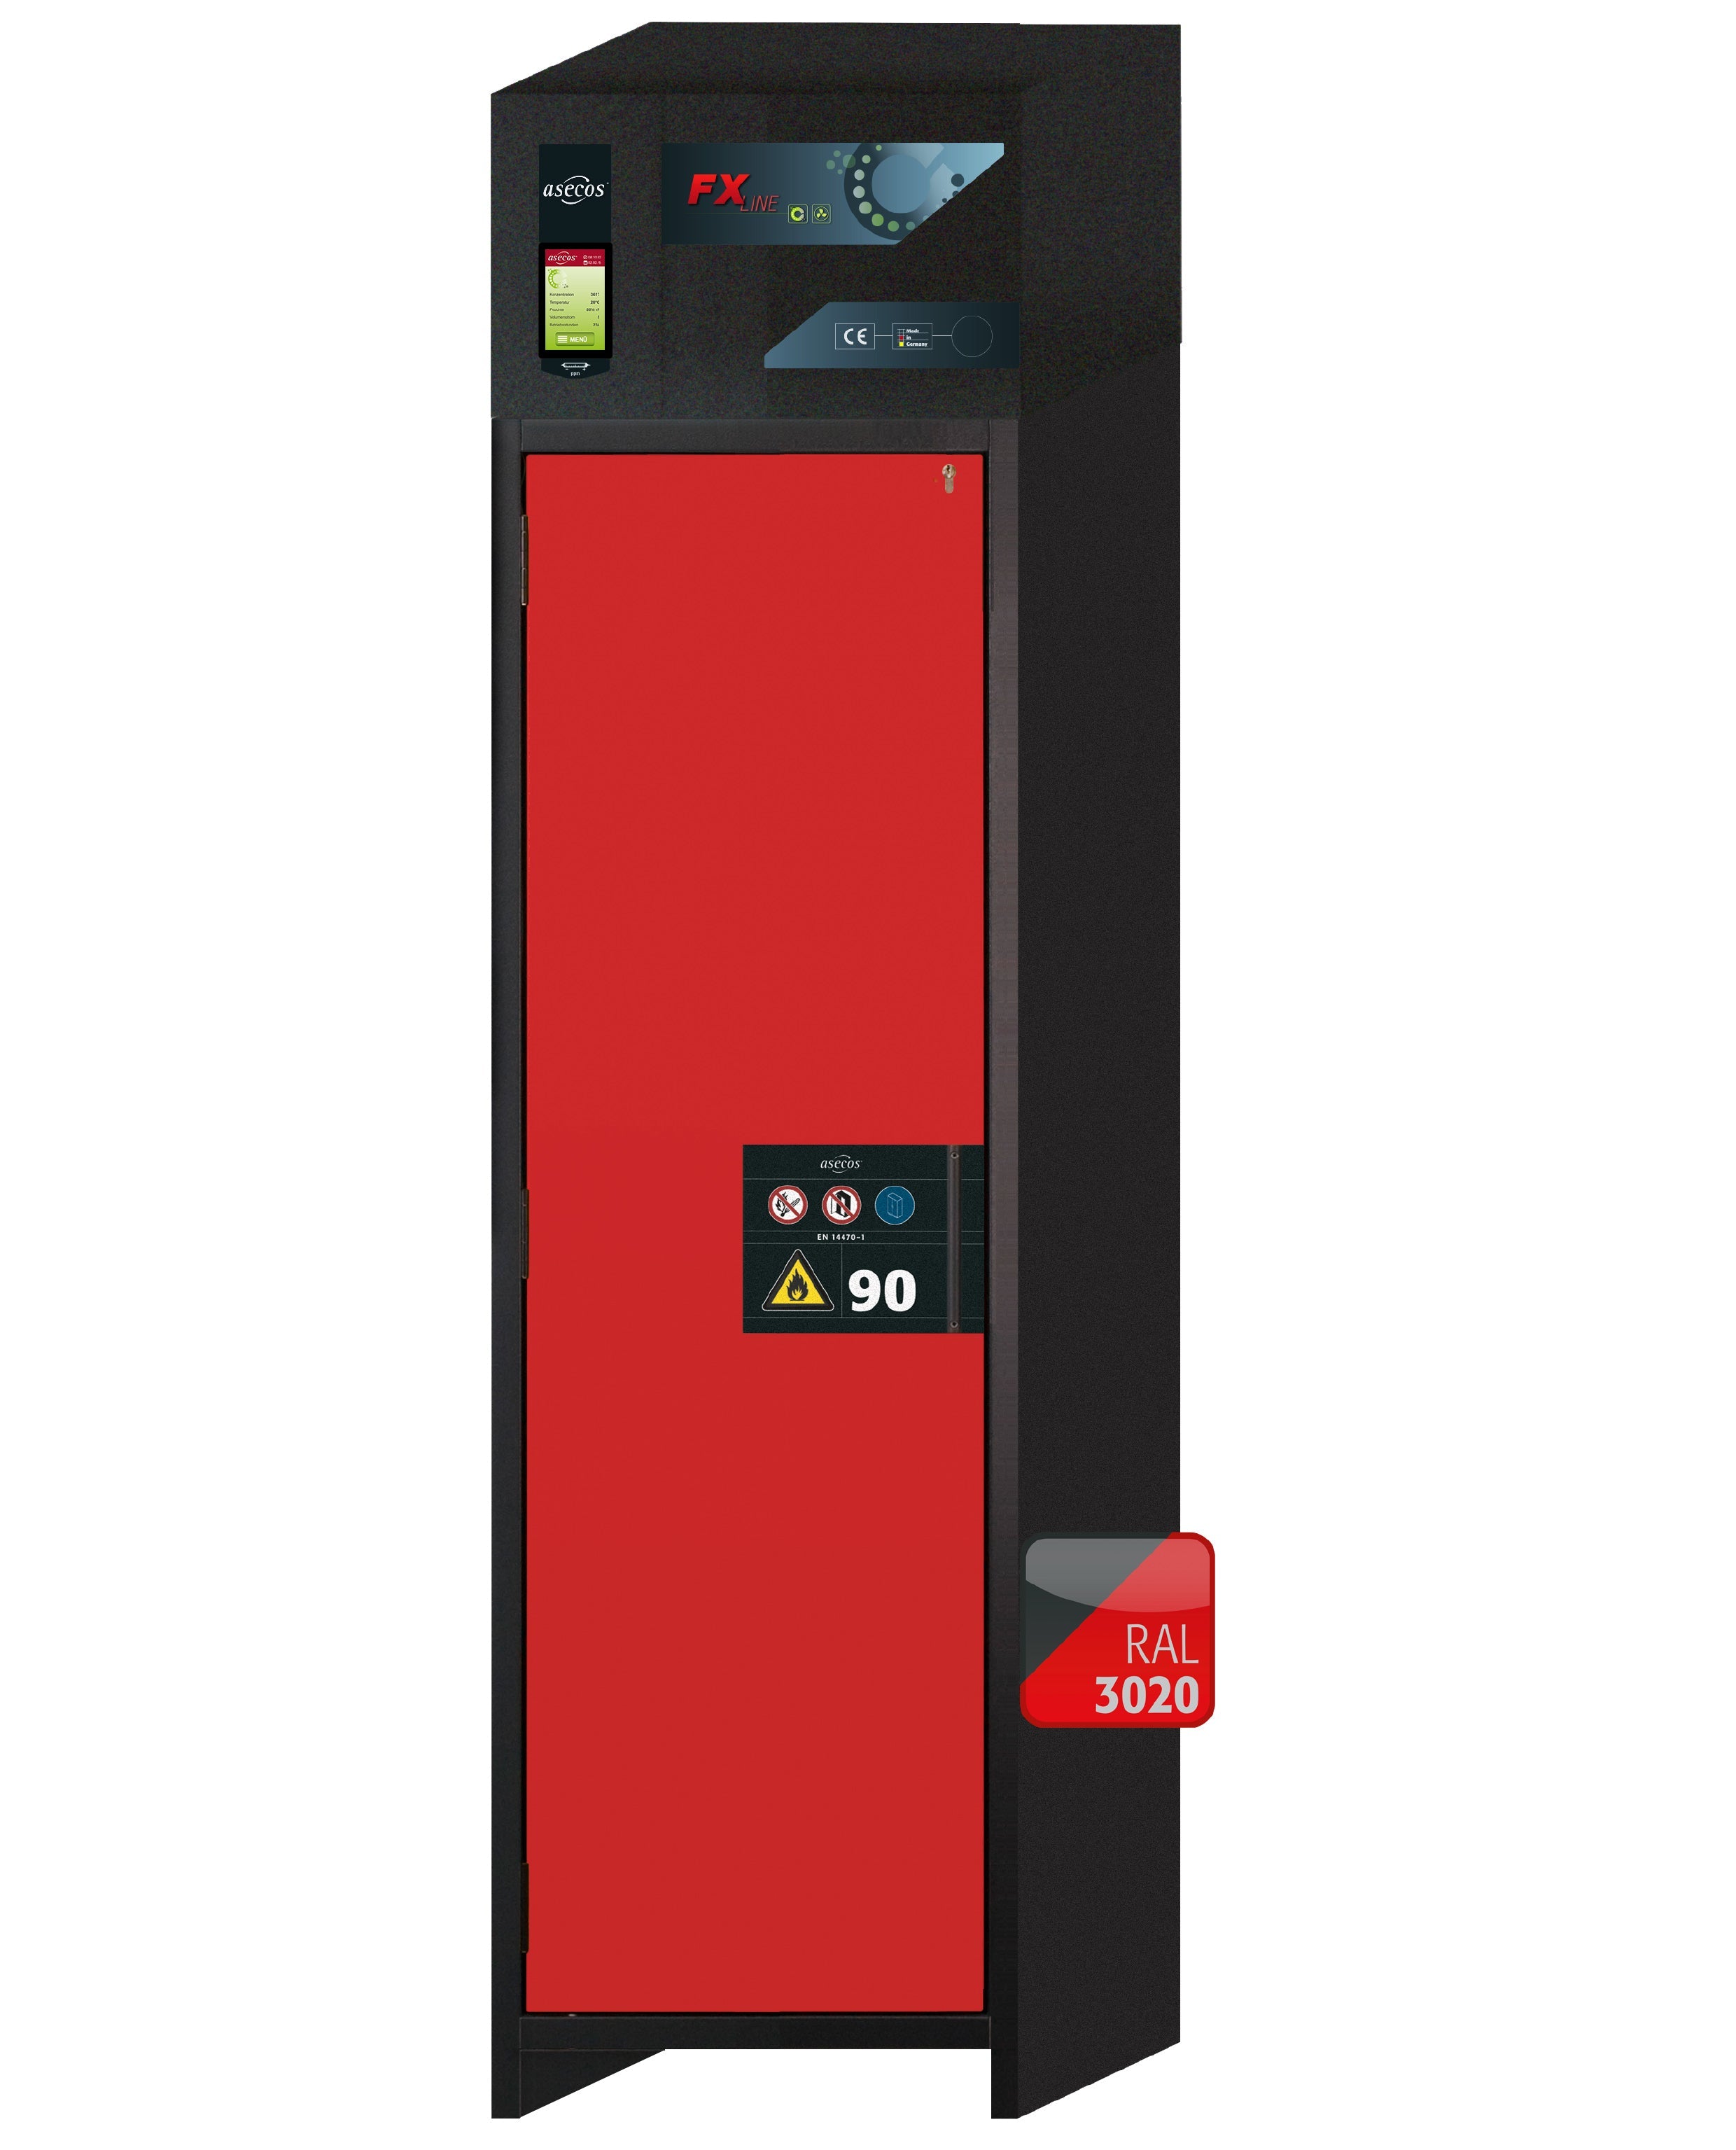 Armoire de filtration d'air de recirculation de type 90 FX-PEGASUS-90 modèle FX90.229.060.WDAC en rouge signalisation RAL 3020 avec 3x pieds de plateau standard (polypropylène)